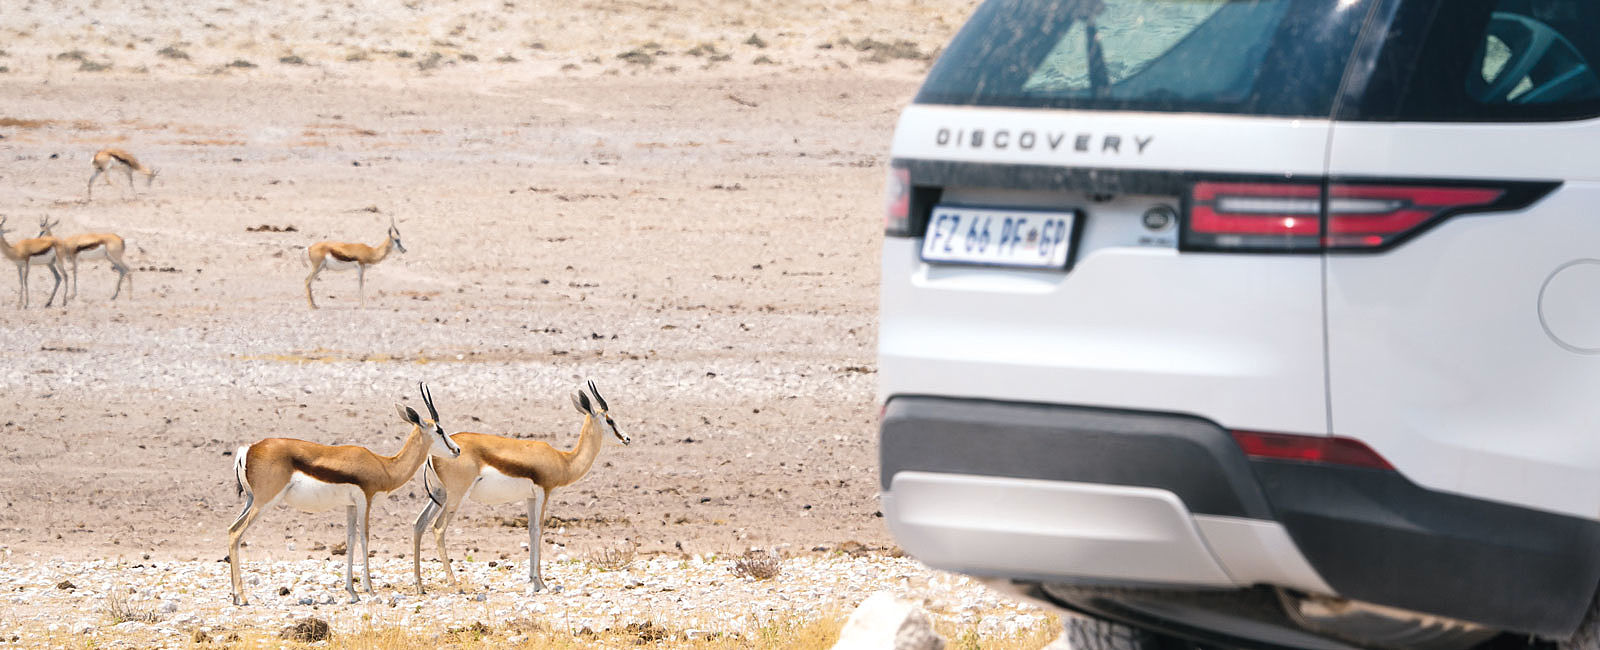 GRATULANTEN
 Nambia im Land Rover entdecken 
